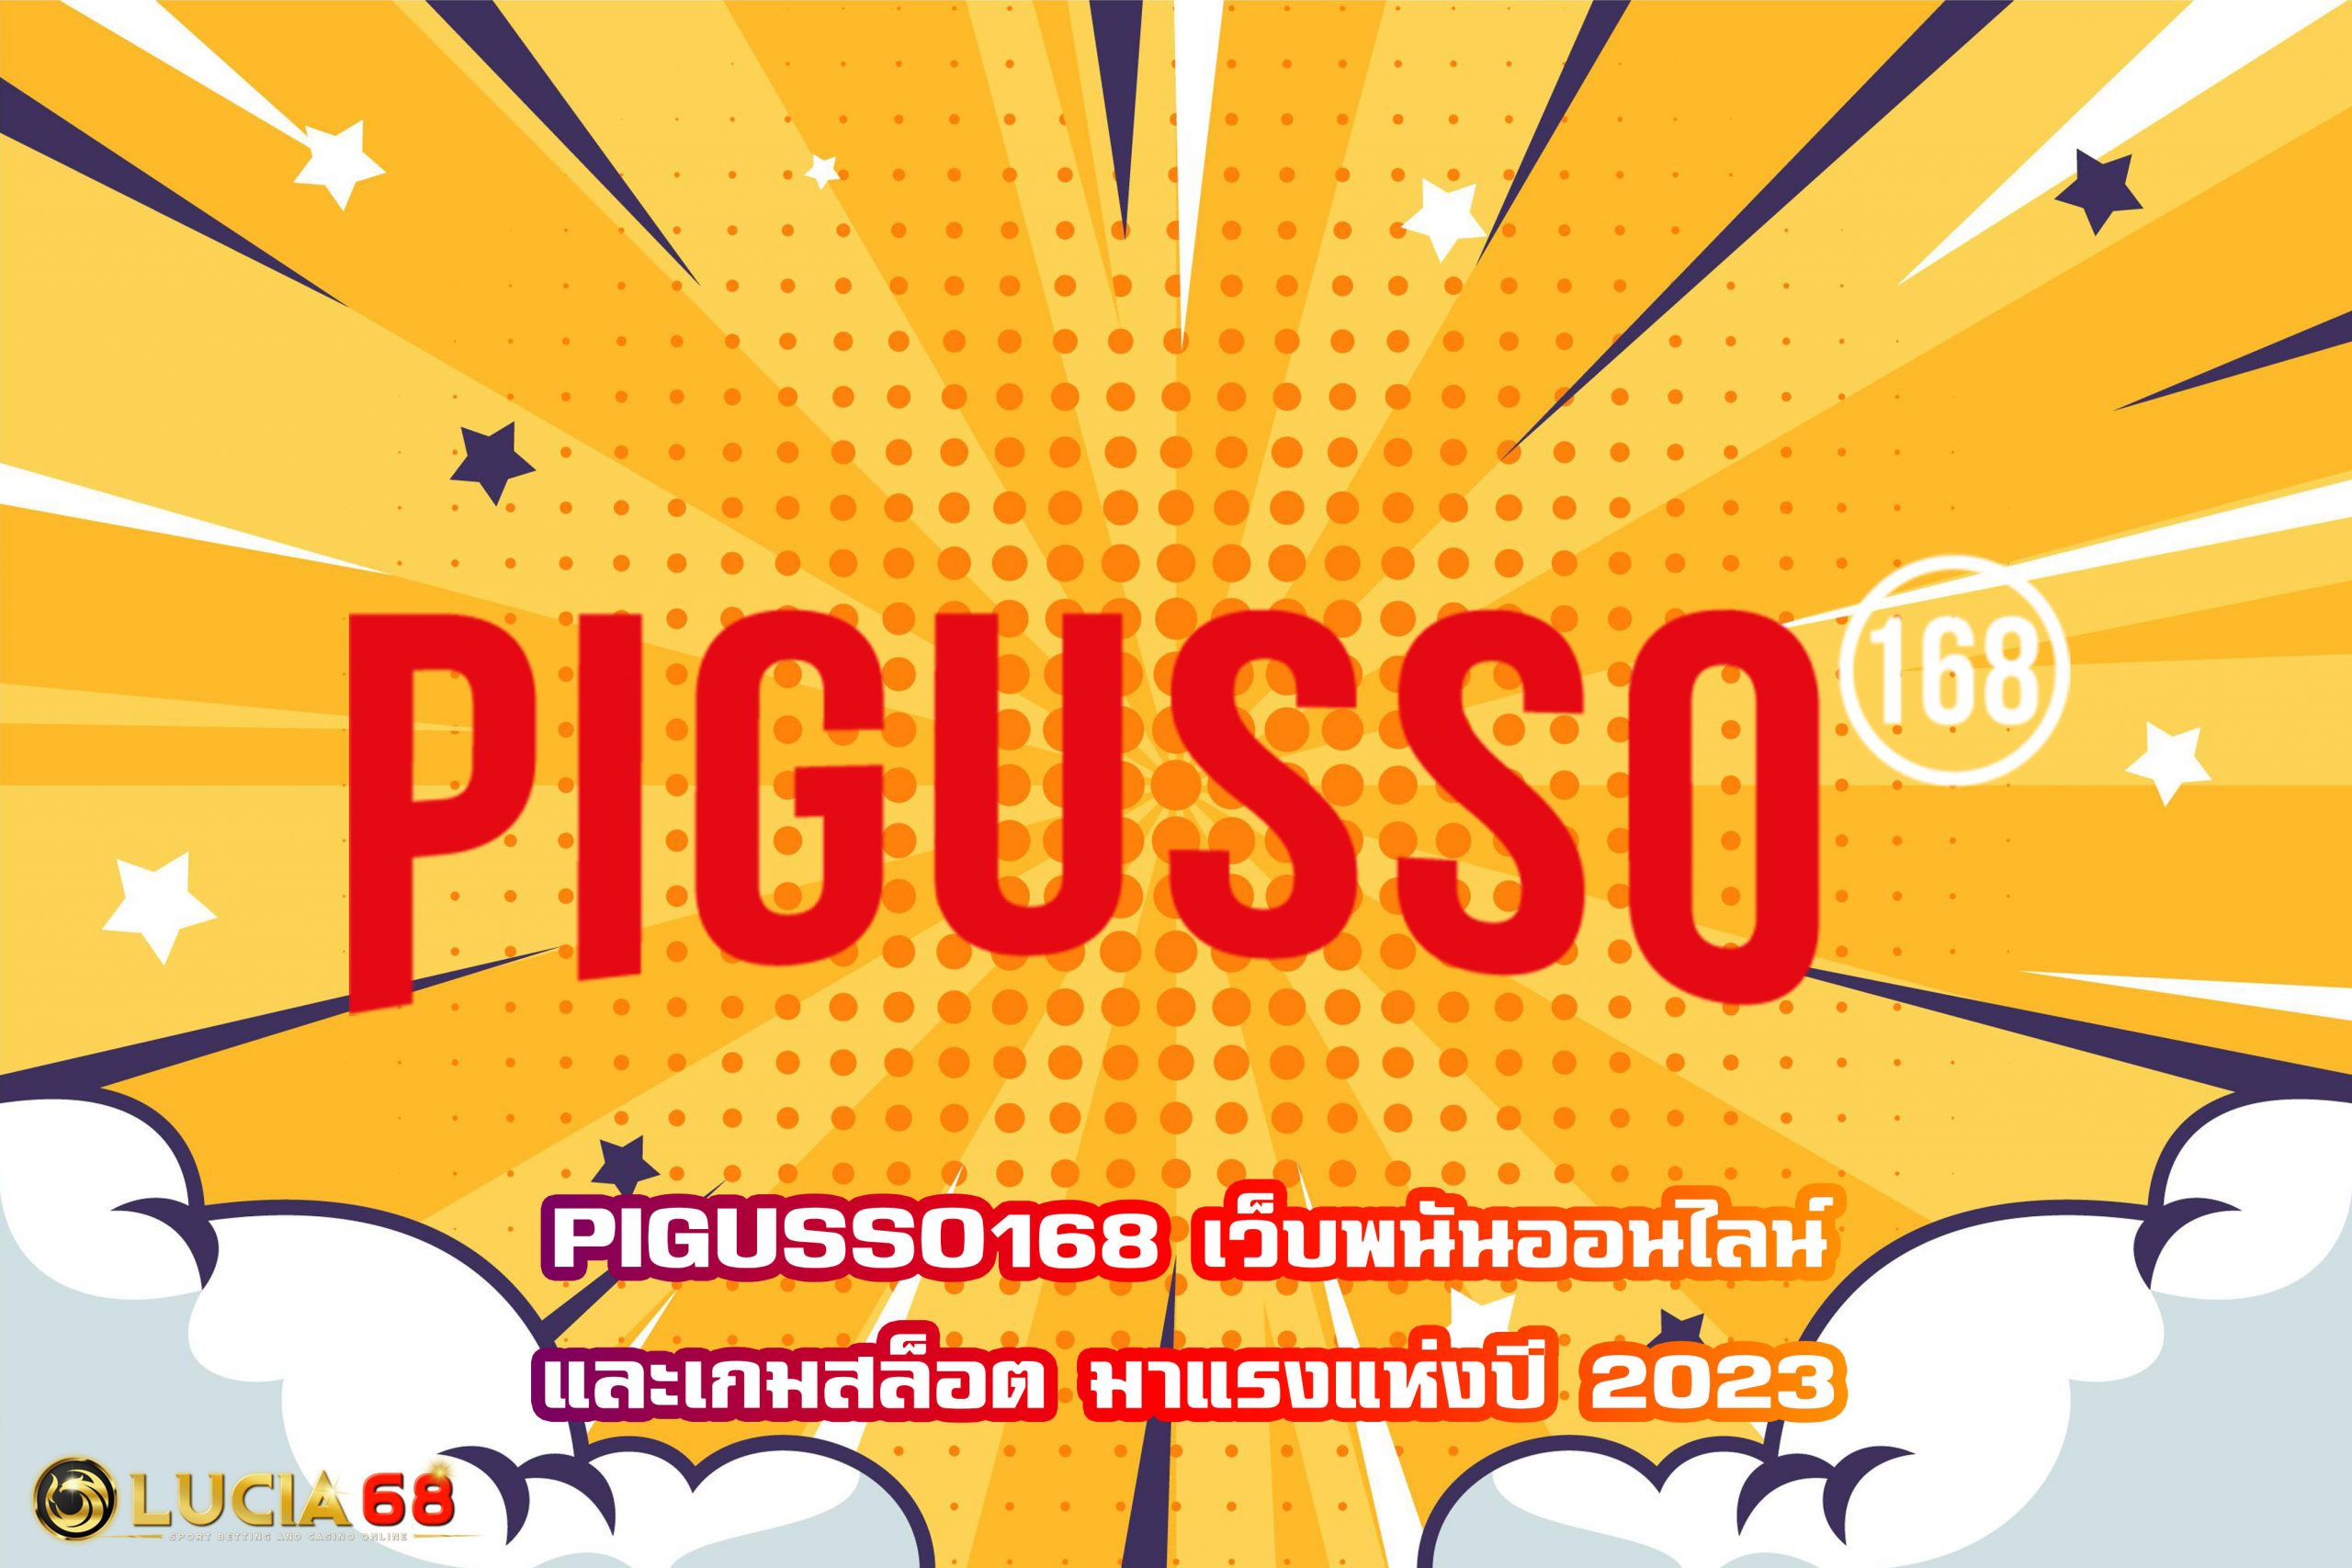 PIGUSSO168 เว็บพนันออนไลน์และเกมสล็อต มาแรงแห่งปี 2023